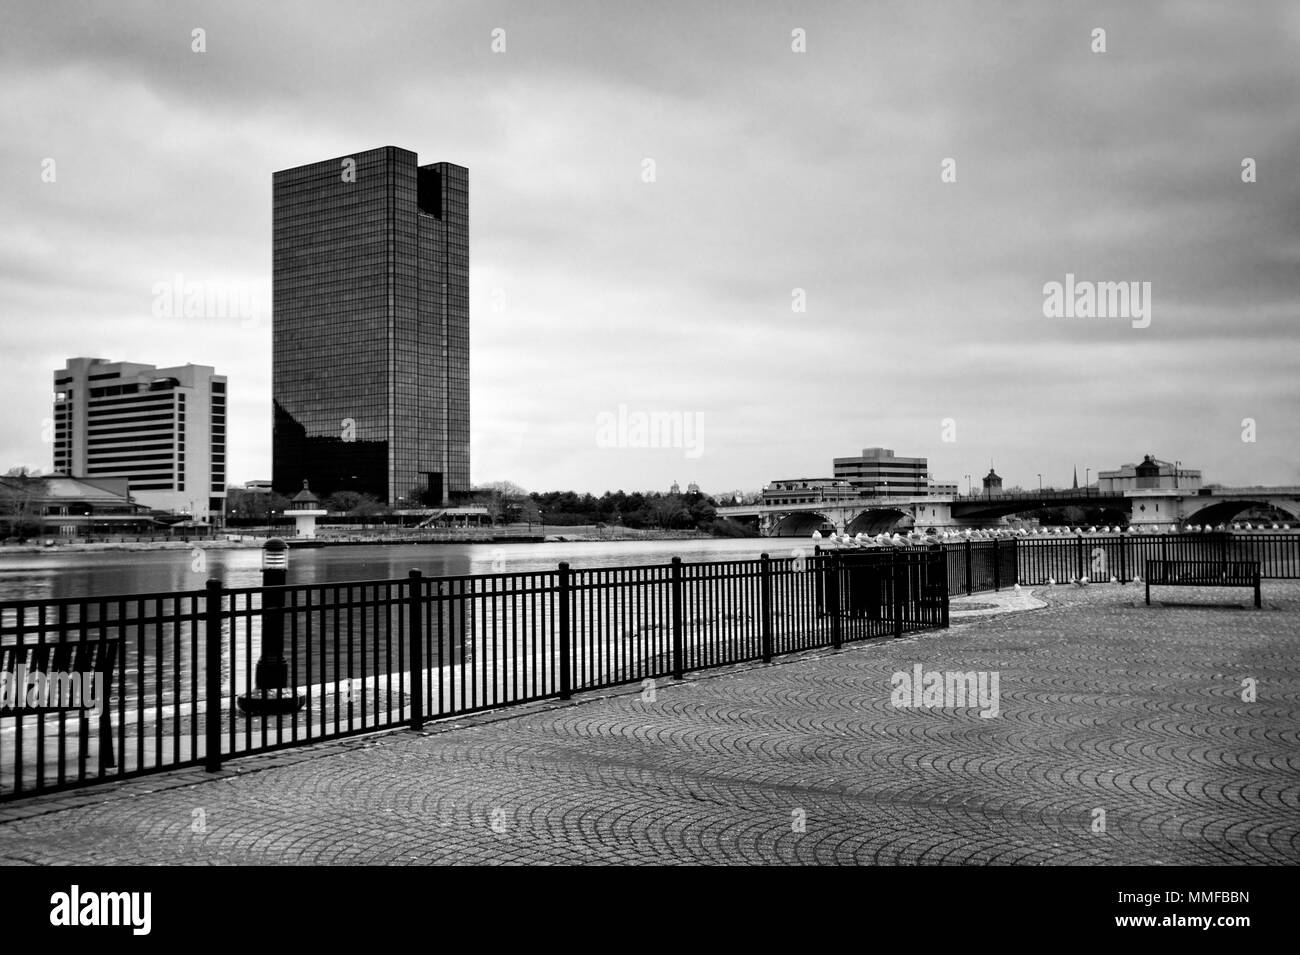 Einen Panoramablick über die Innenstadt von Toledo Ohio Skyline aus über dem Maumee River ein beliebtes Restaurant mit einem fertiger Backstein Boardwalk. Stockfoto